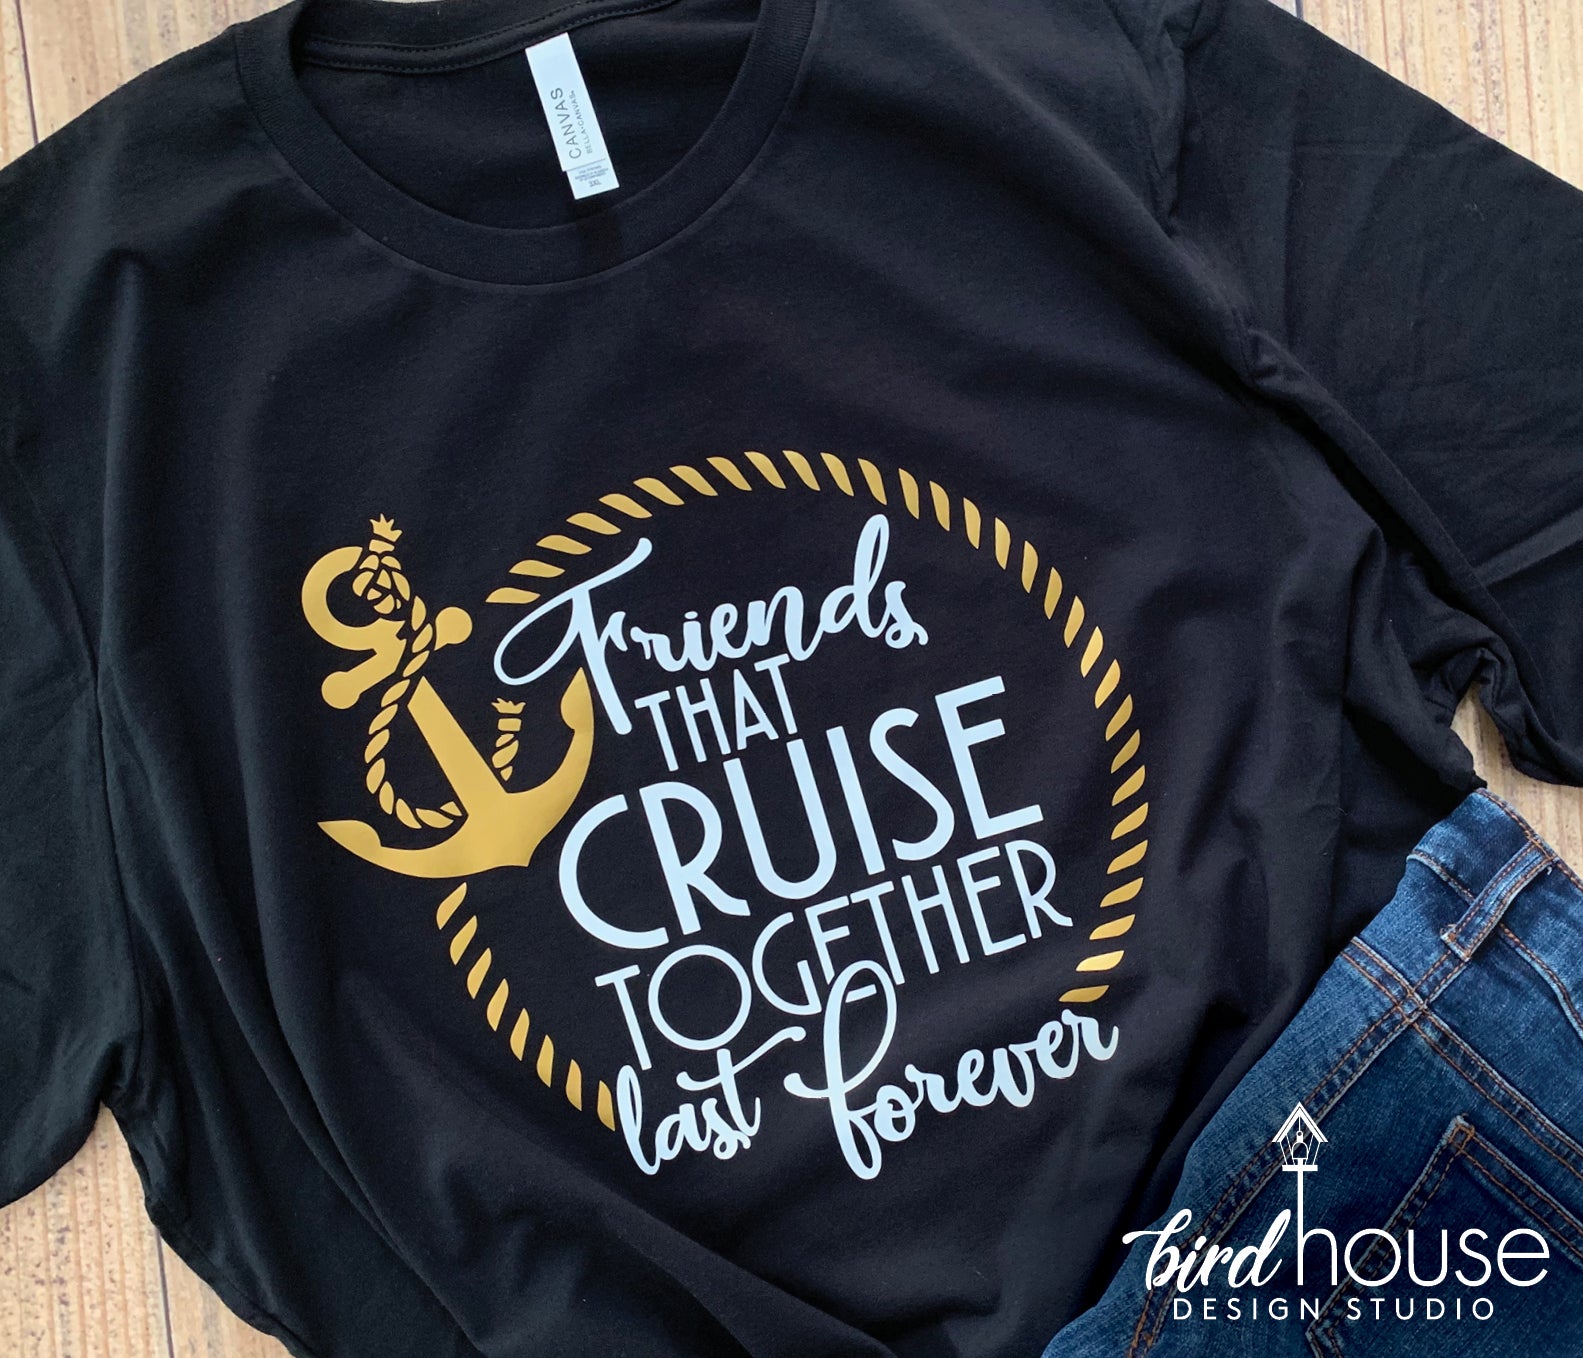 CustomTeesForTots Matching Cruise Shirts